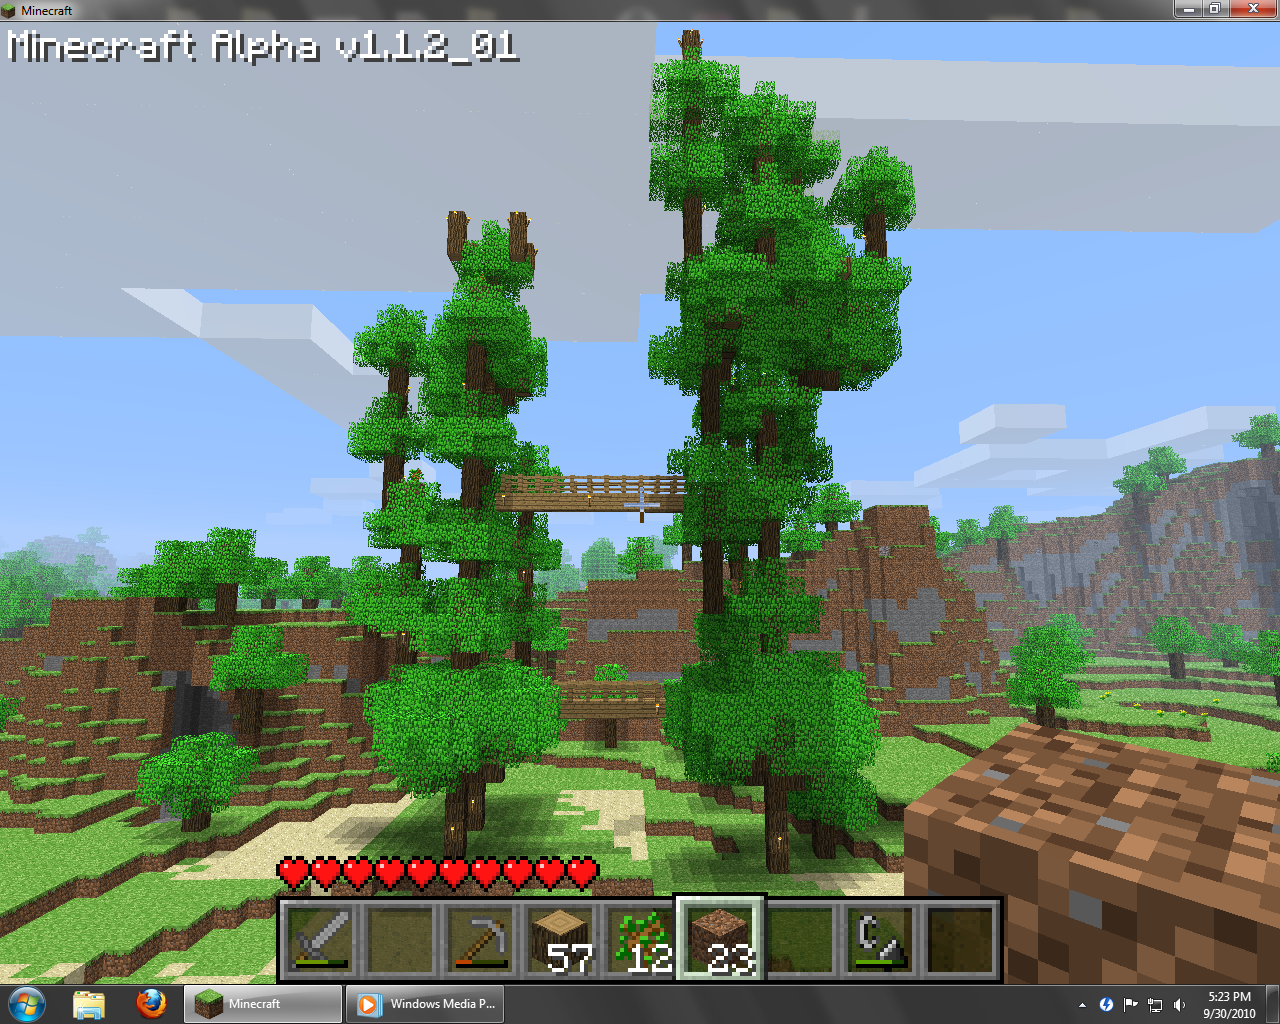 Super Duper Tree image - Minecraft - Mod DB